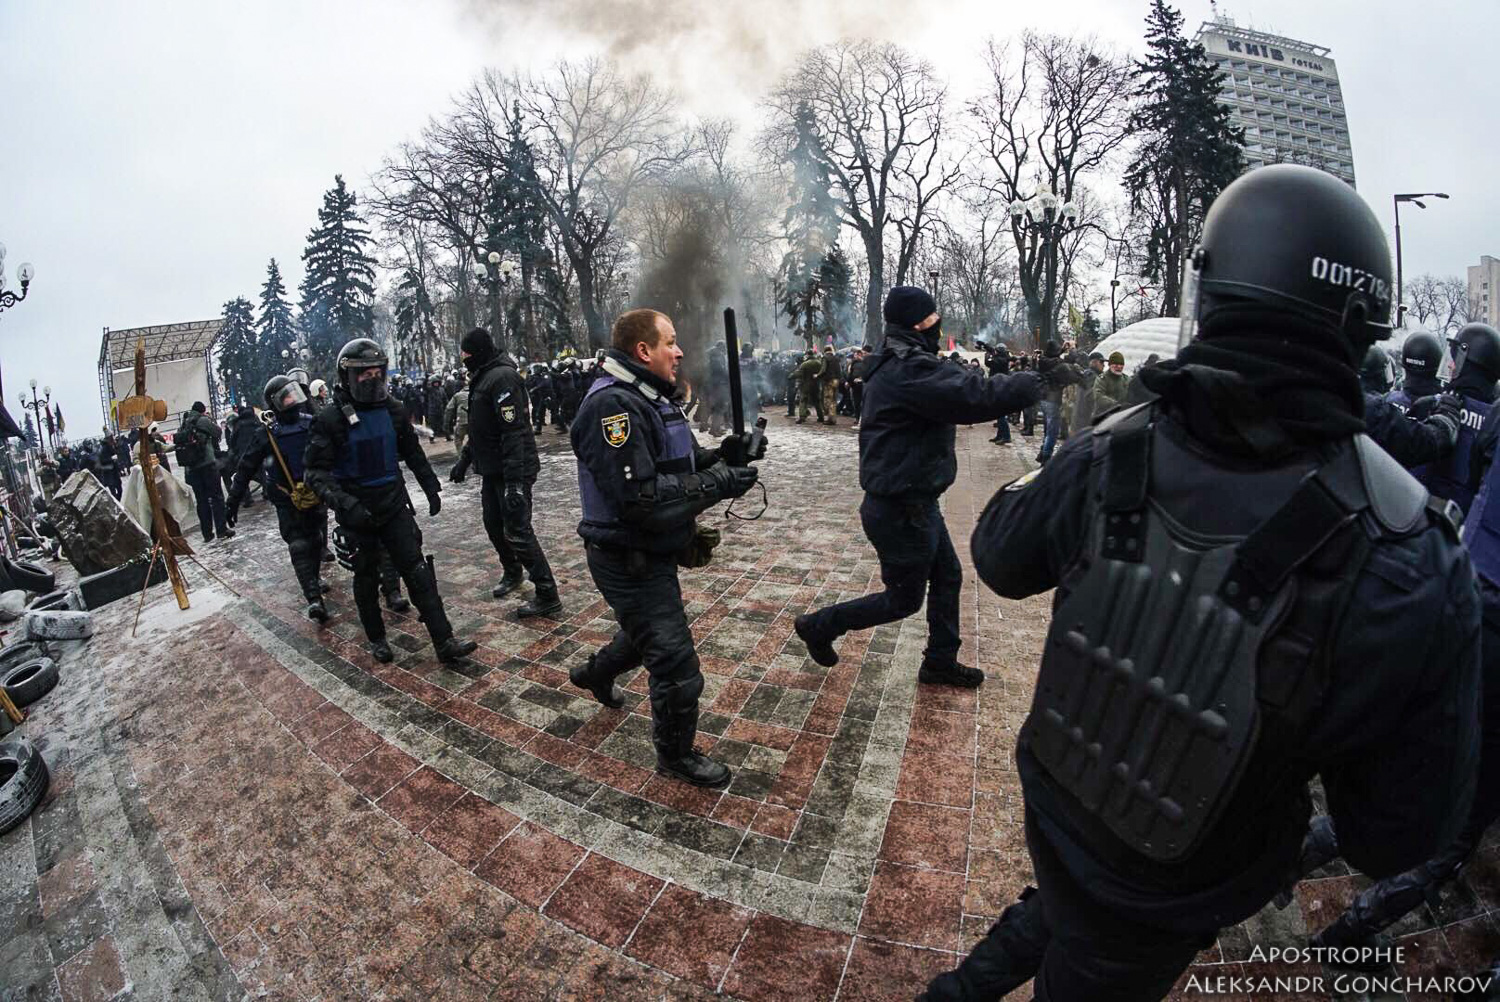 Donbas - Ukraine News in brief. Tuesday 16 January. [Ukrainian sources] 0f26bce0d13d39dc2de710246ac7af38